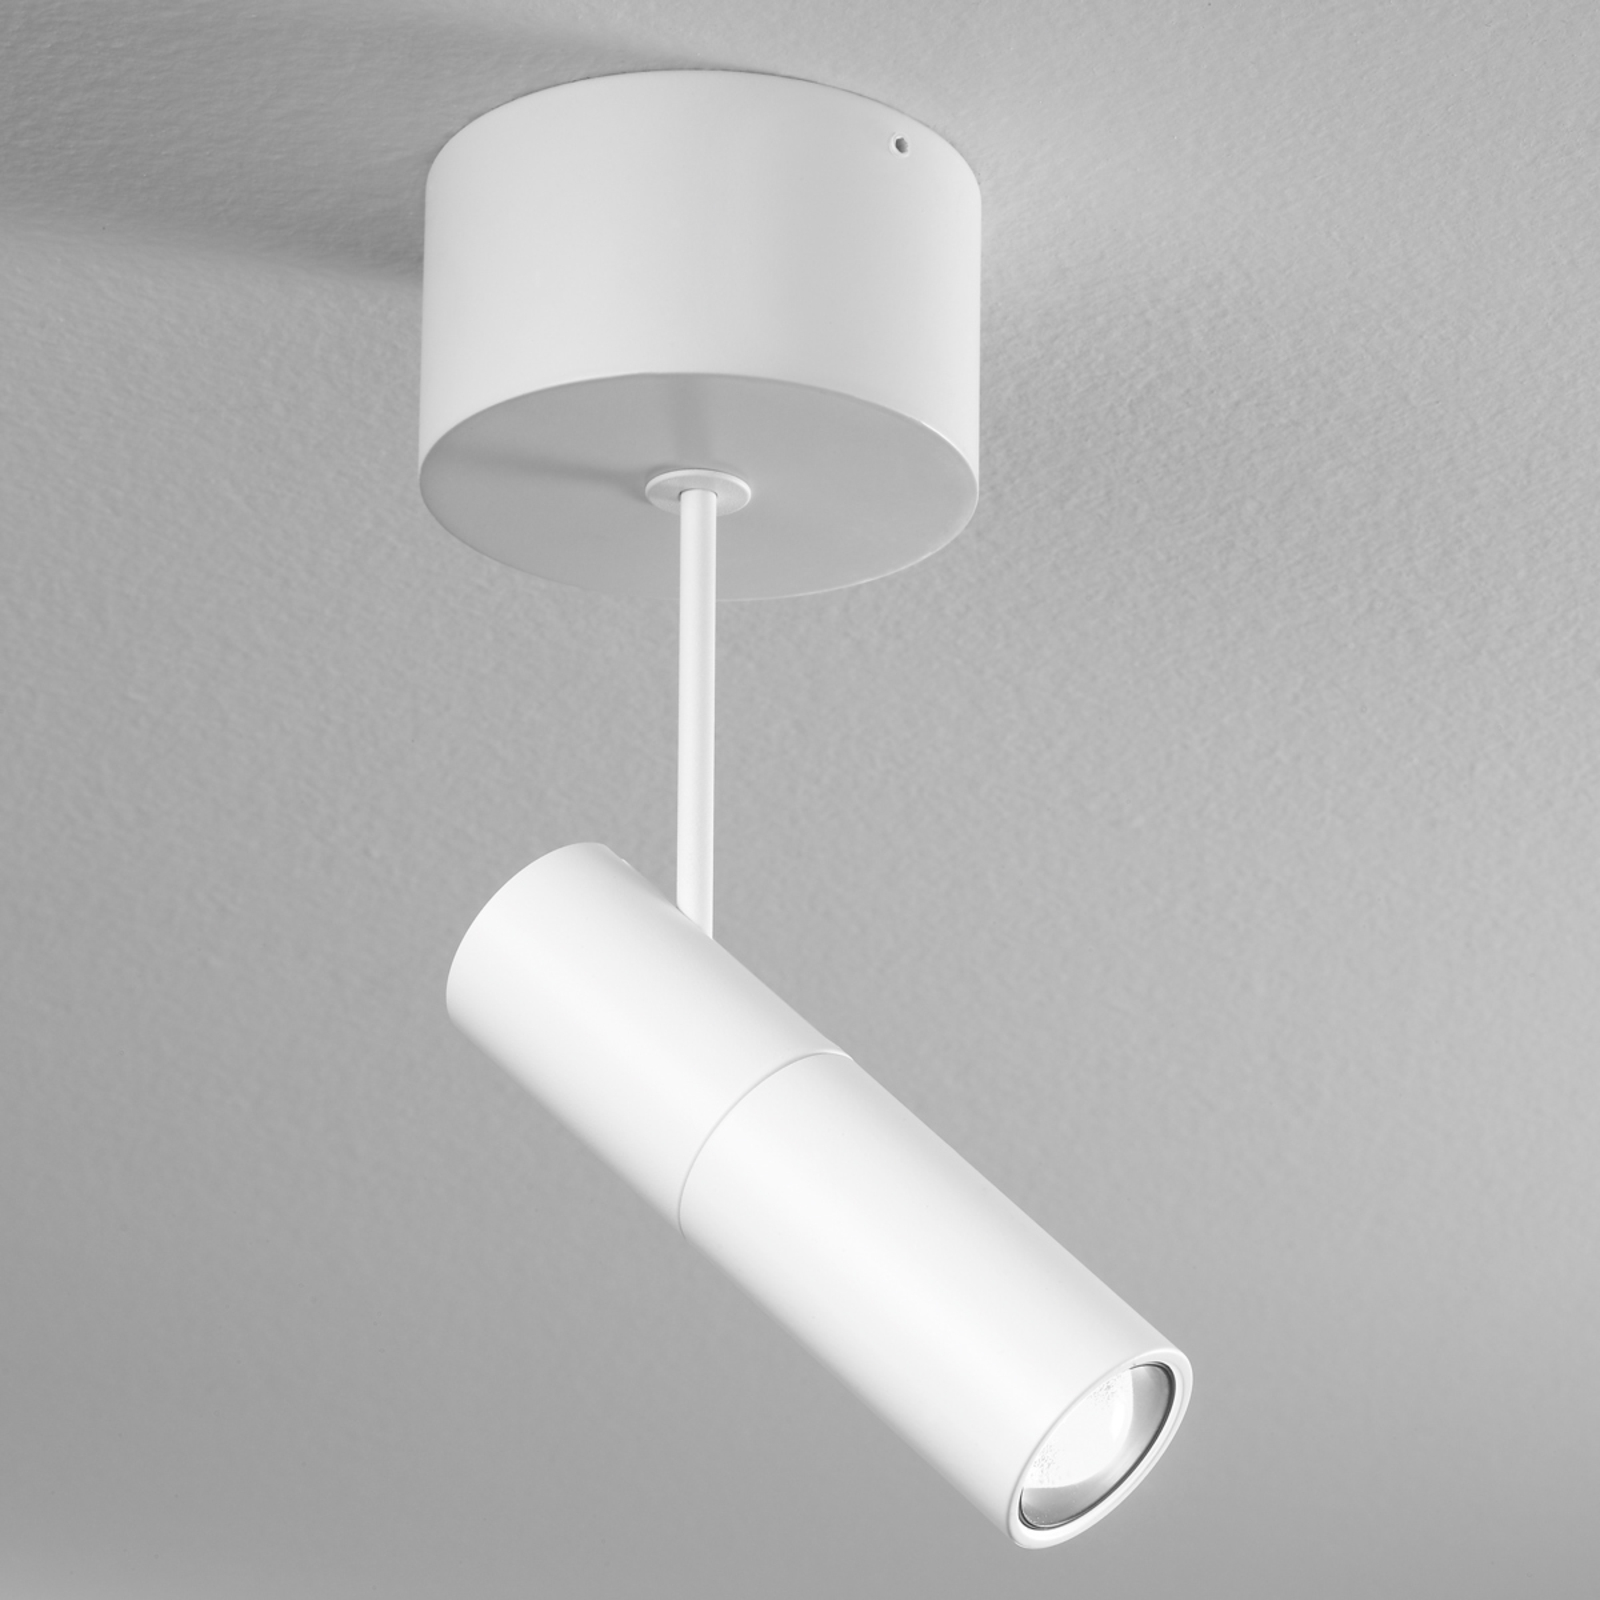 LED-spotlight Zooom XL med påbyggnadshölje, vit